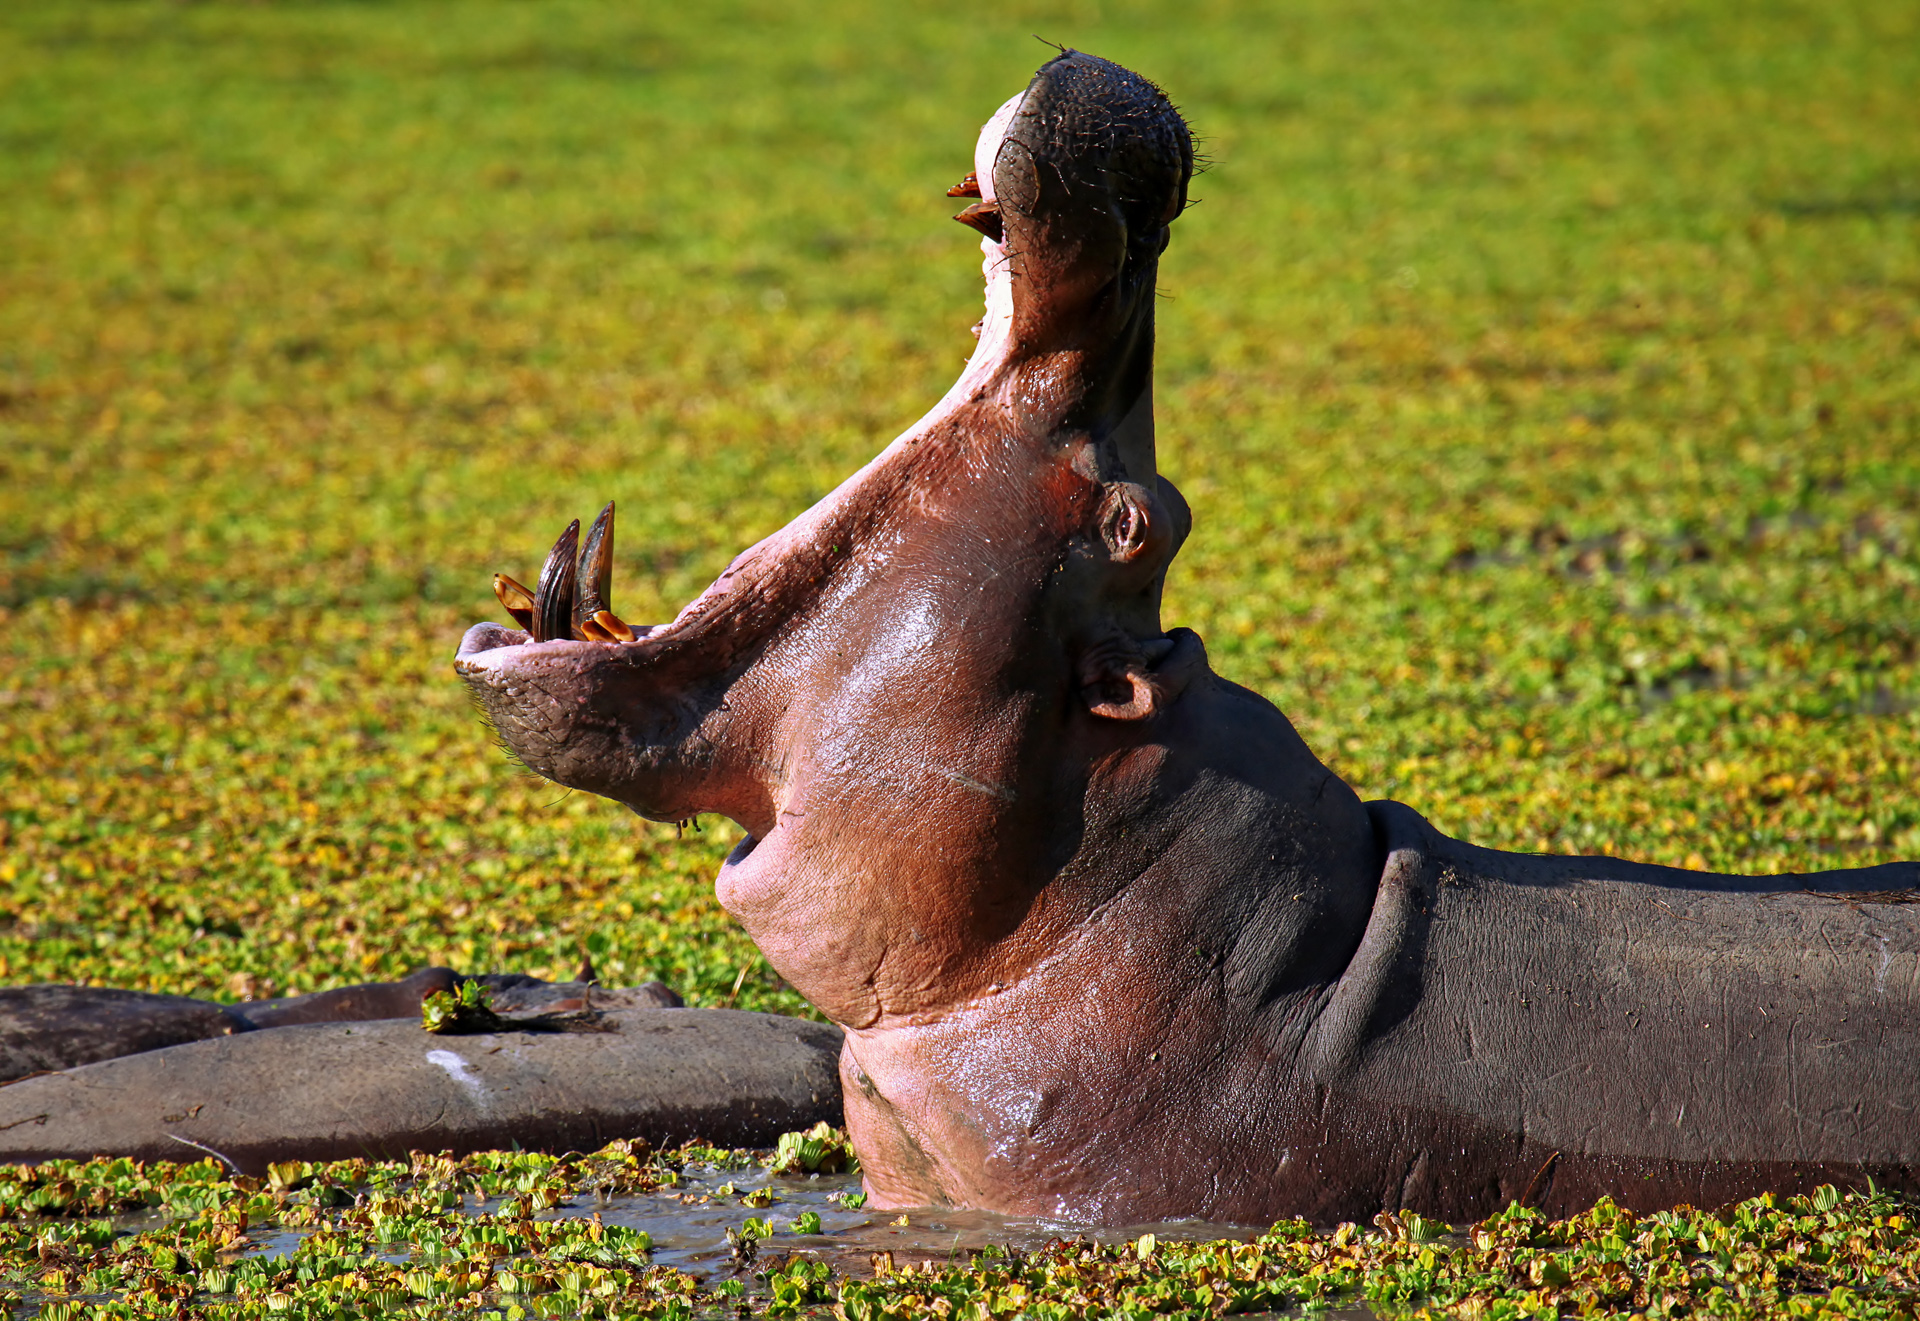 Ein Nilpferd in Sambia.